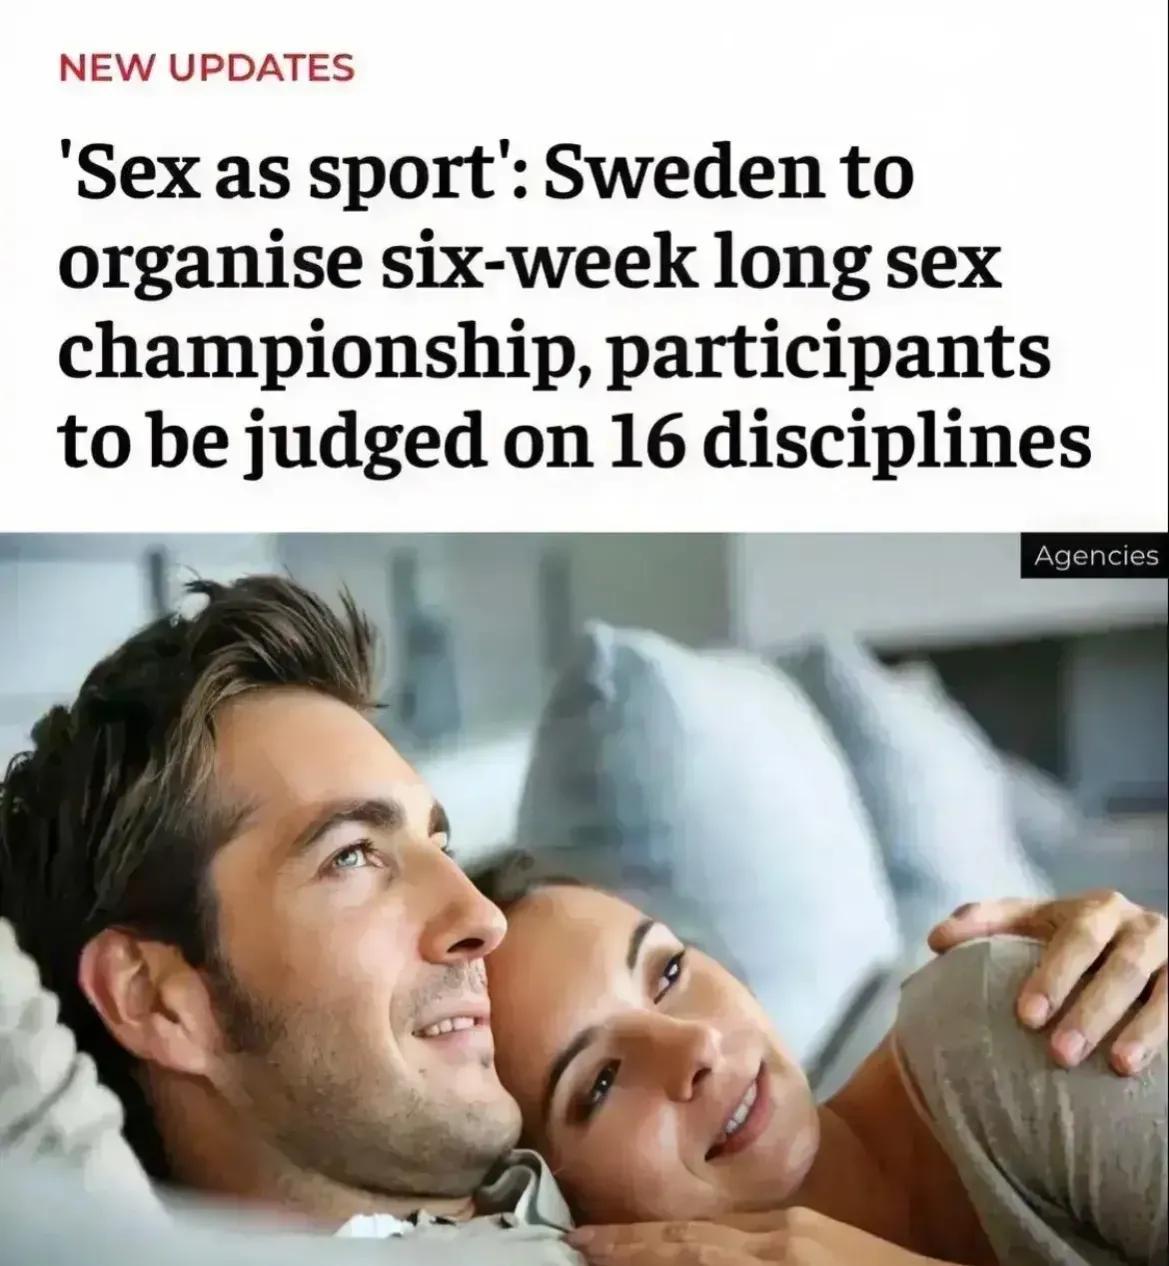 这。。瑞典把“性”注册为一项体育运动，将举办世界首次性运动会。

在这里有几个问(1)